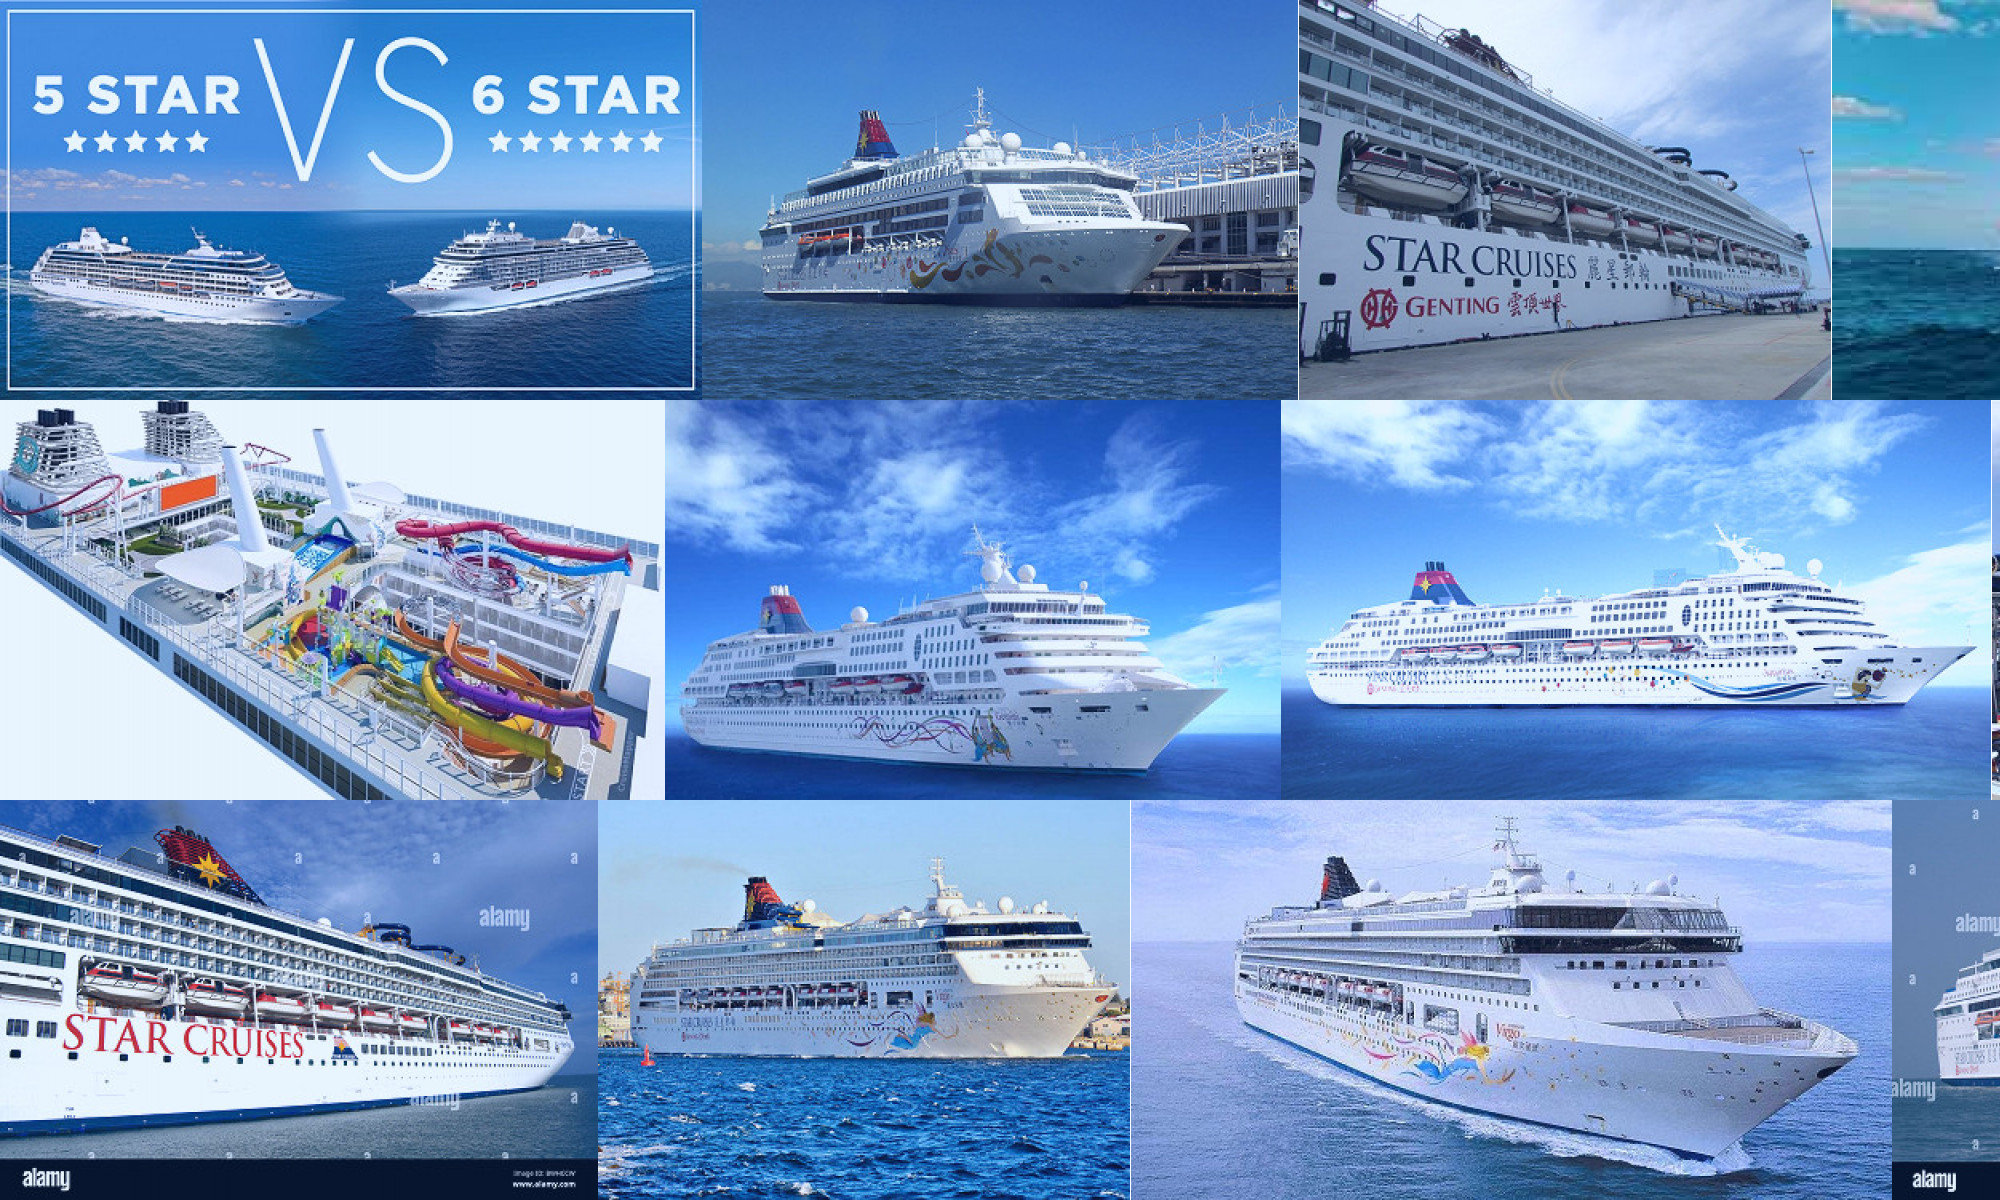 star cruises